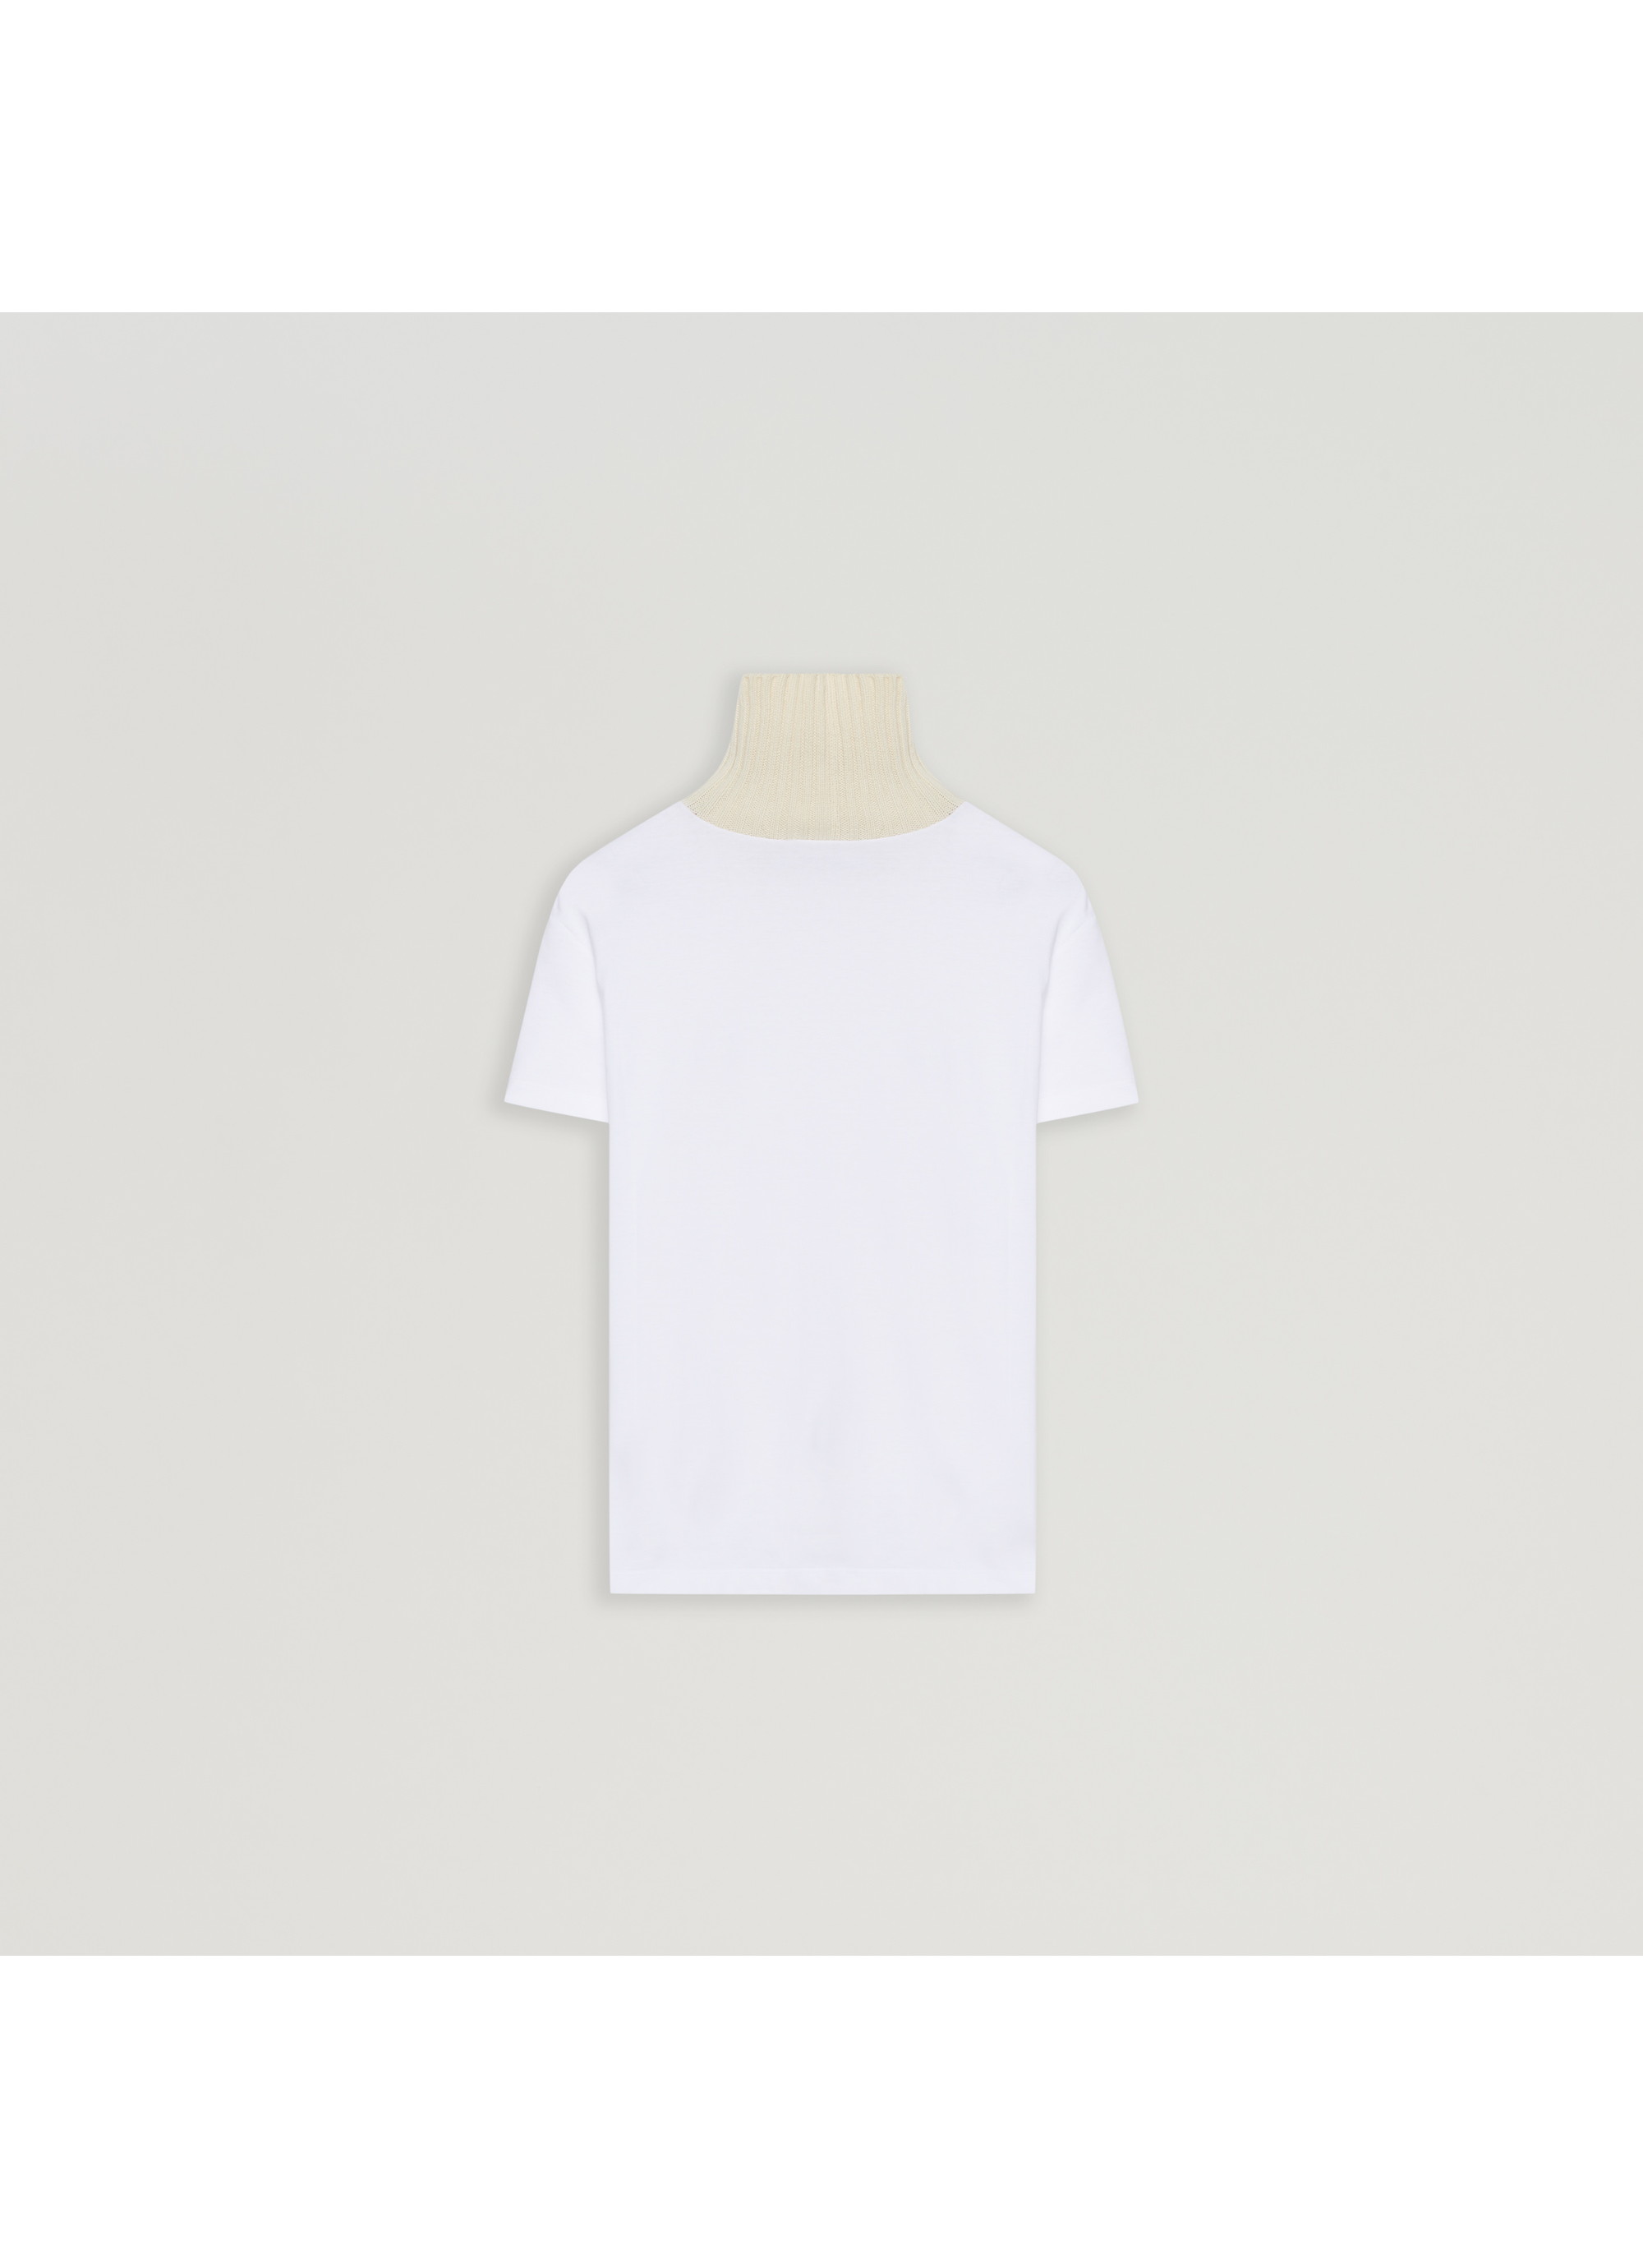 コットン100% ベーシックTシャツ 詳細画像 ホワイト 6